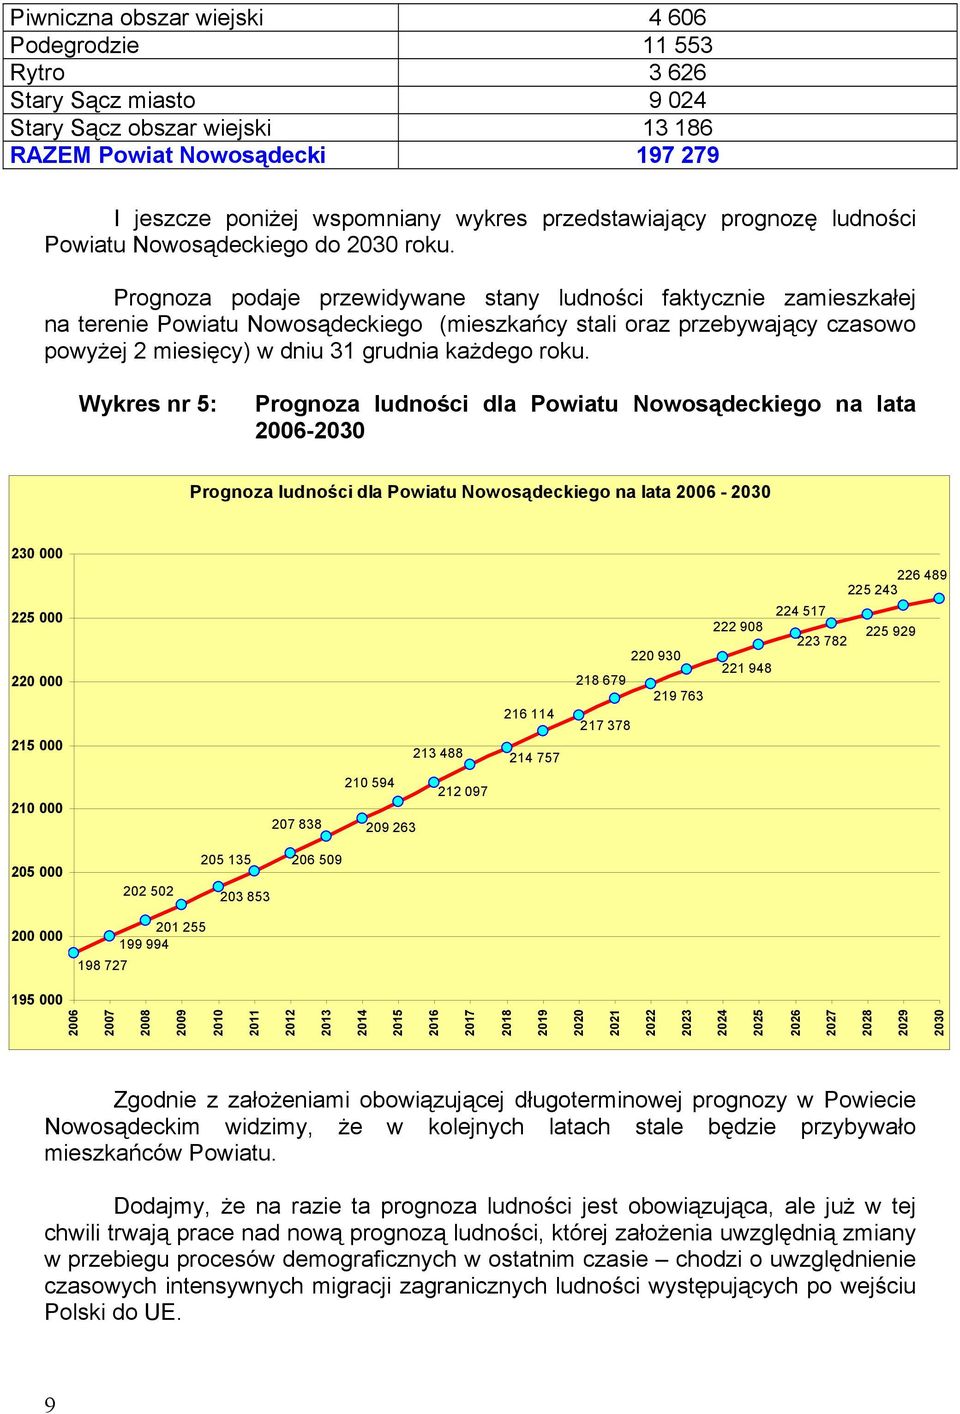 Prognoza podaje przewidywane stany ludności faktycznie zamieszkałej na terenie Powiatu Nowosądeckiego (mieszkańcy stali oraz przebywający czasowo powyżej 2 miesięcy) w dniu 31 grudnia każdego roku.